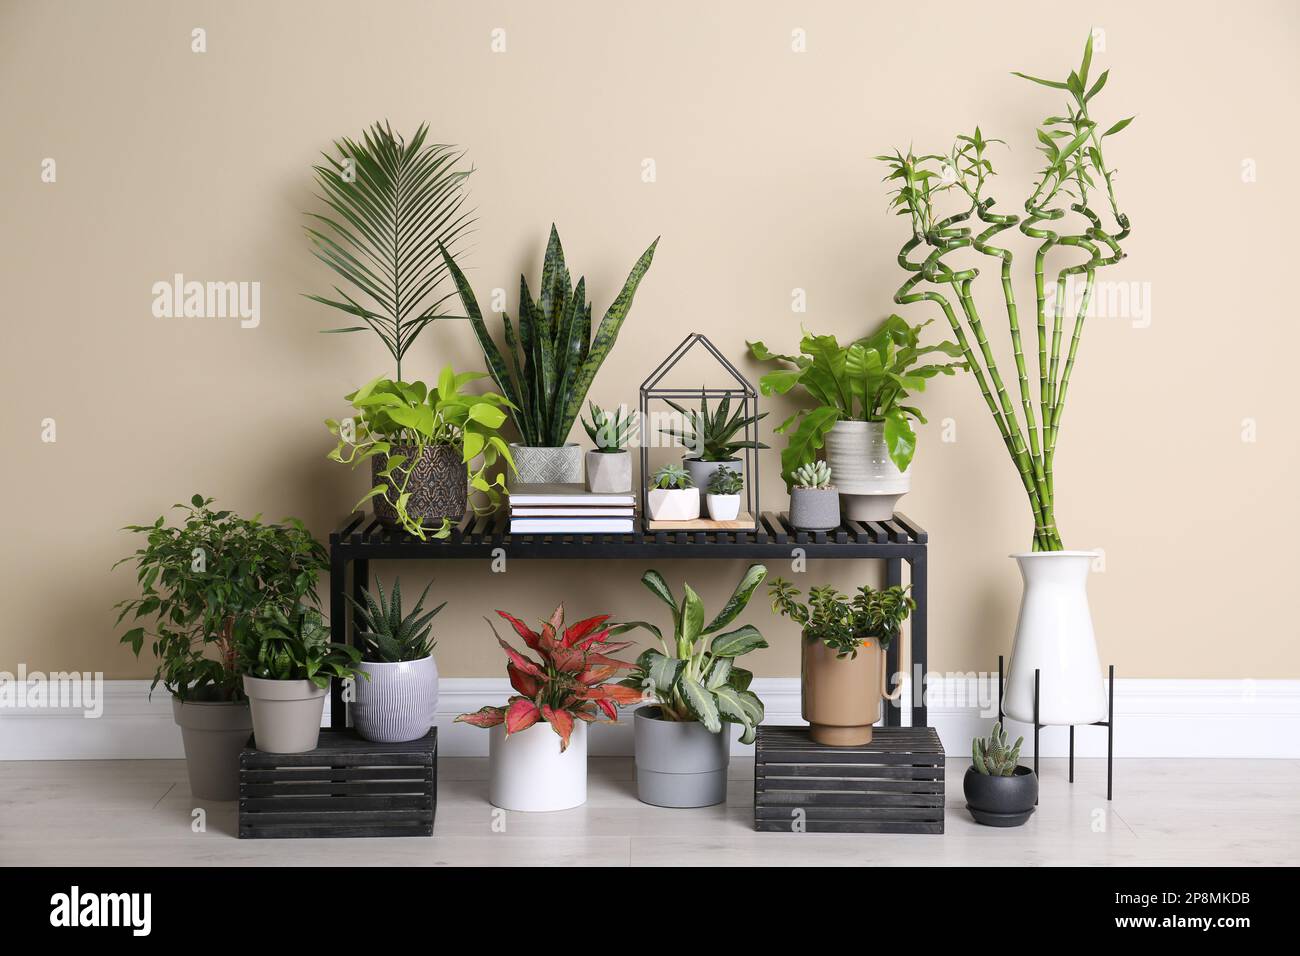 Elegante interior de la habitación con hermosas plantas en macetas y mesa  Fotografía de stock - Alamy